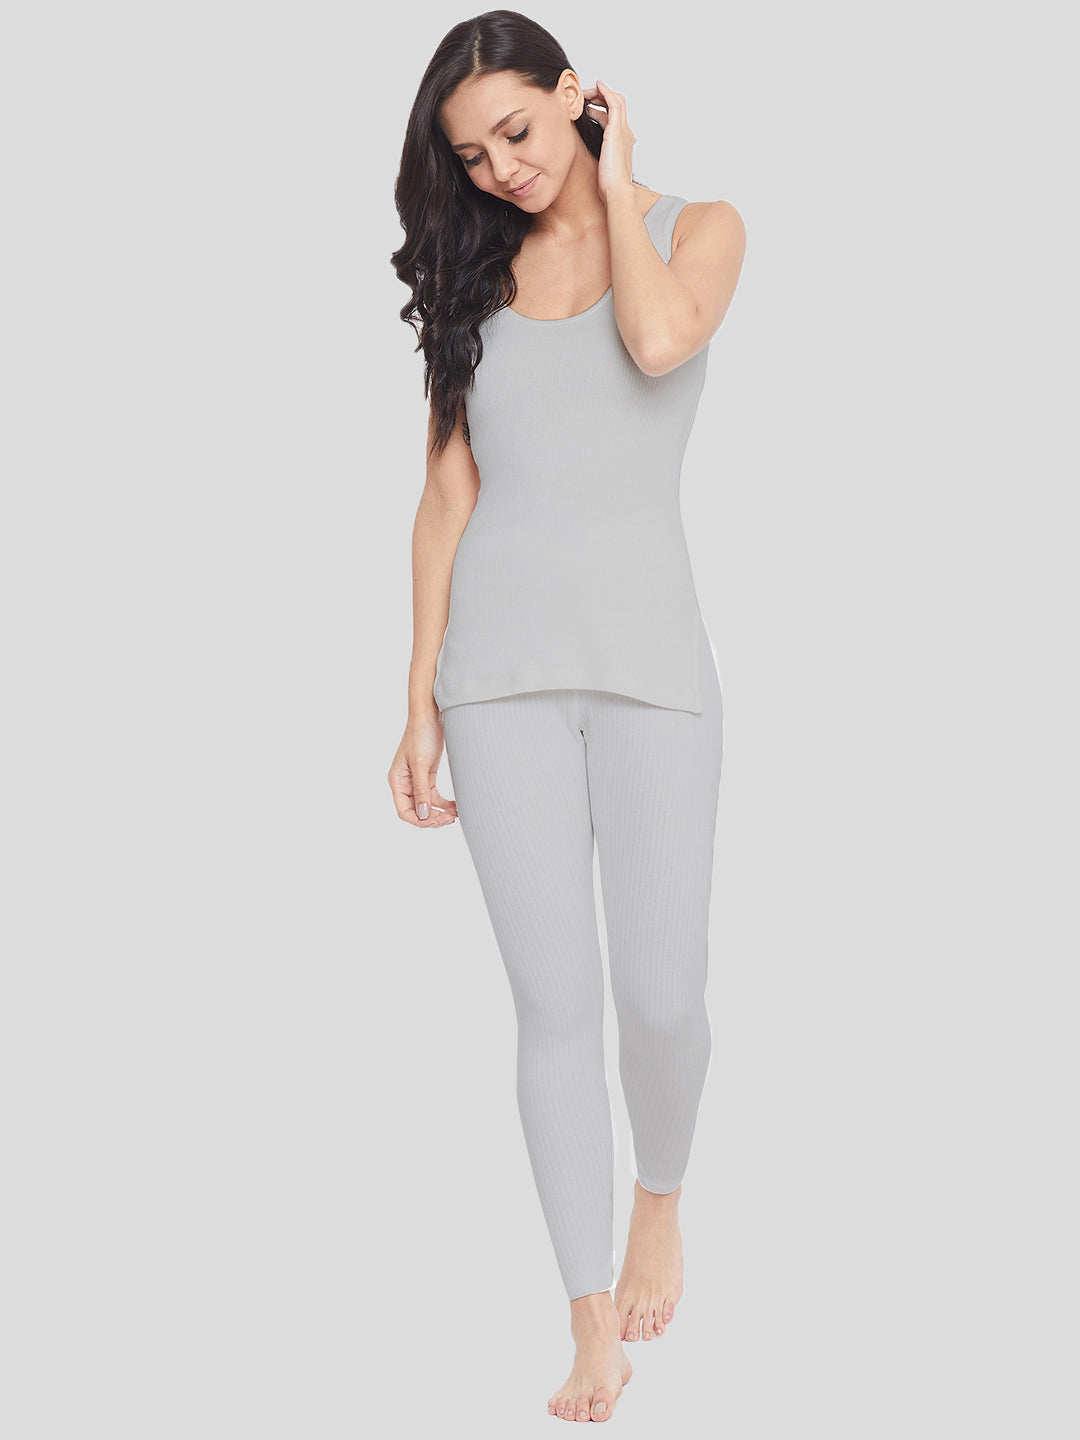 Neva Sleeveless Slip Thermal Top For Women - Milange Grey (Velveti)